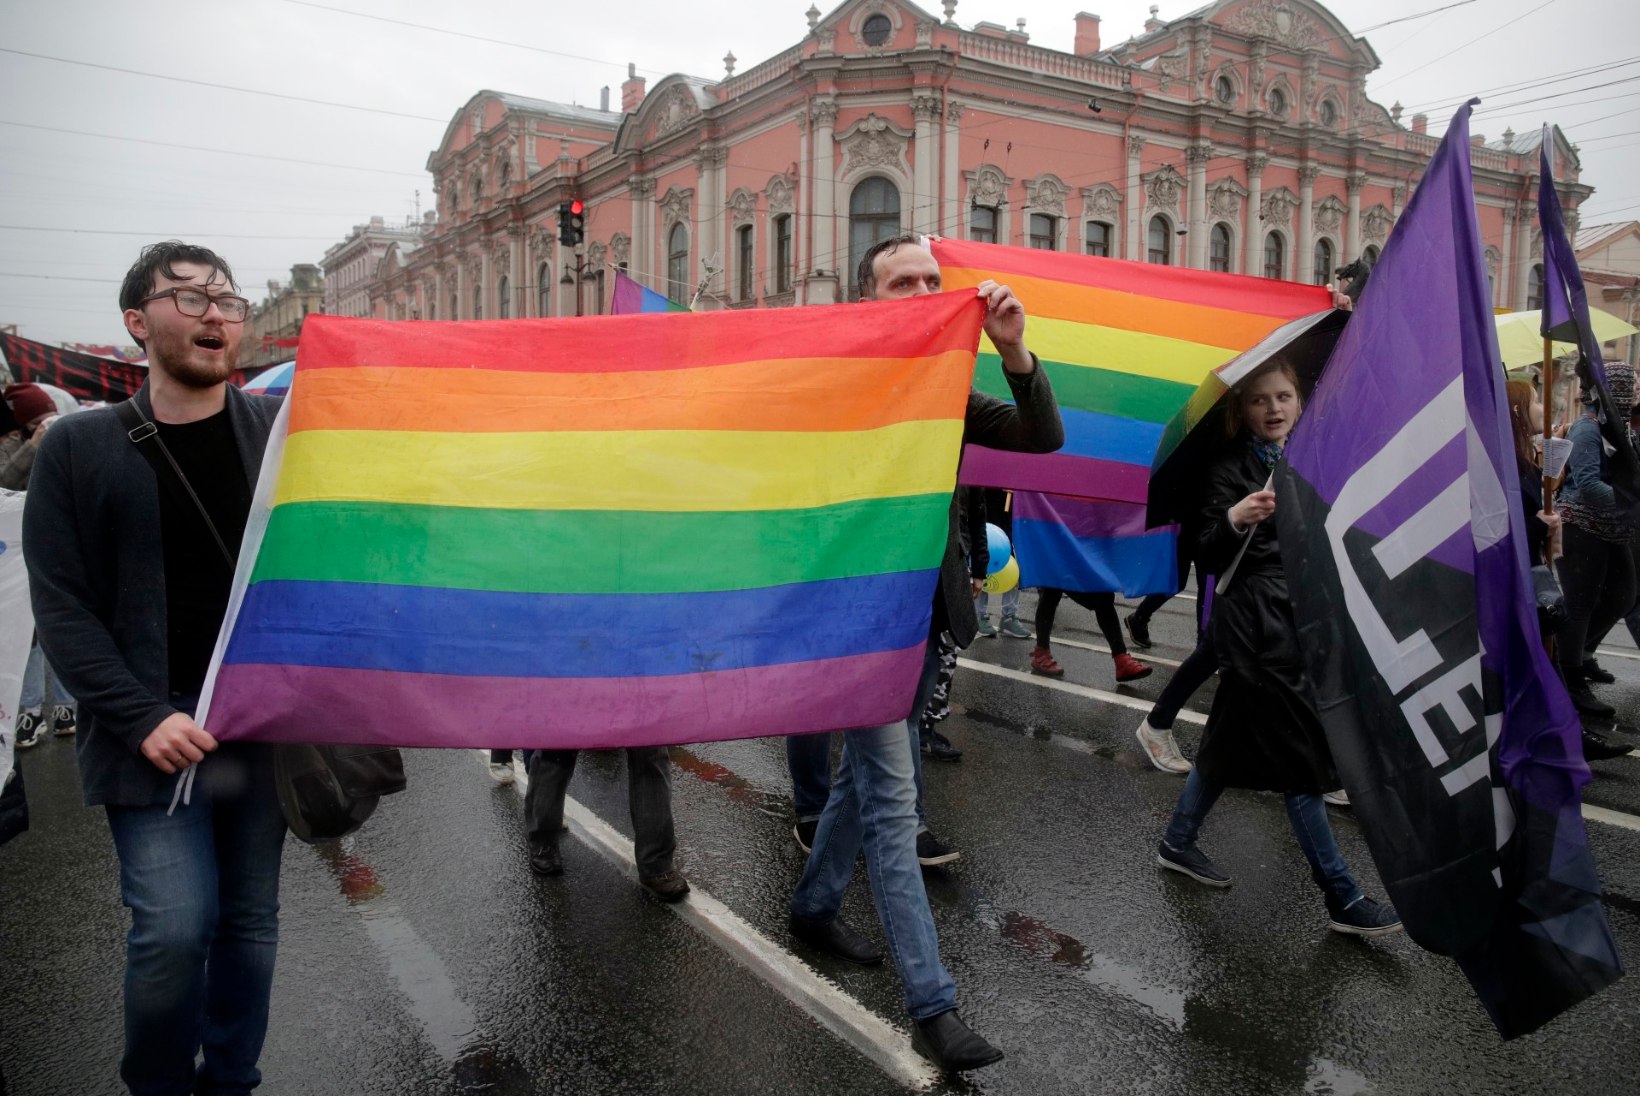 Venemaal tegutseb enda sõnul homoseksuaale raviv psühhoterapeut